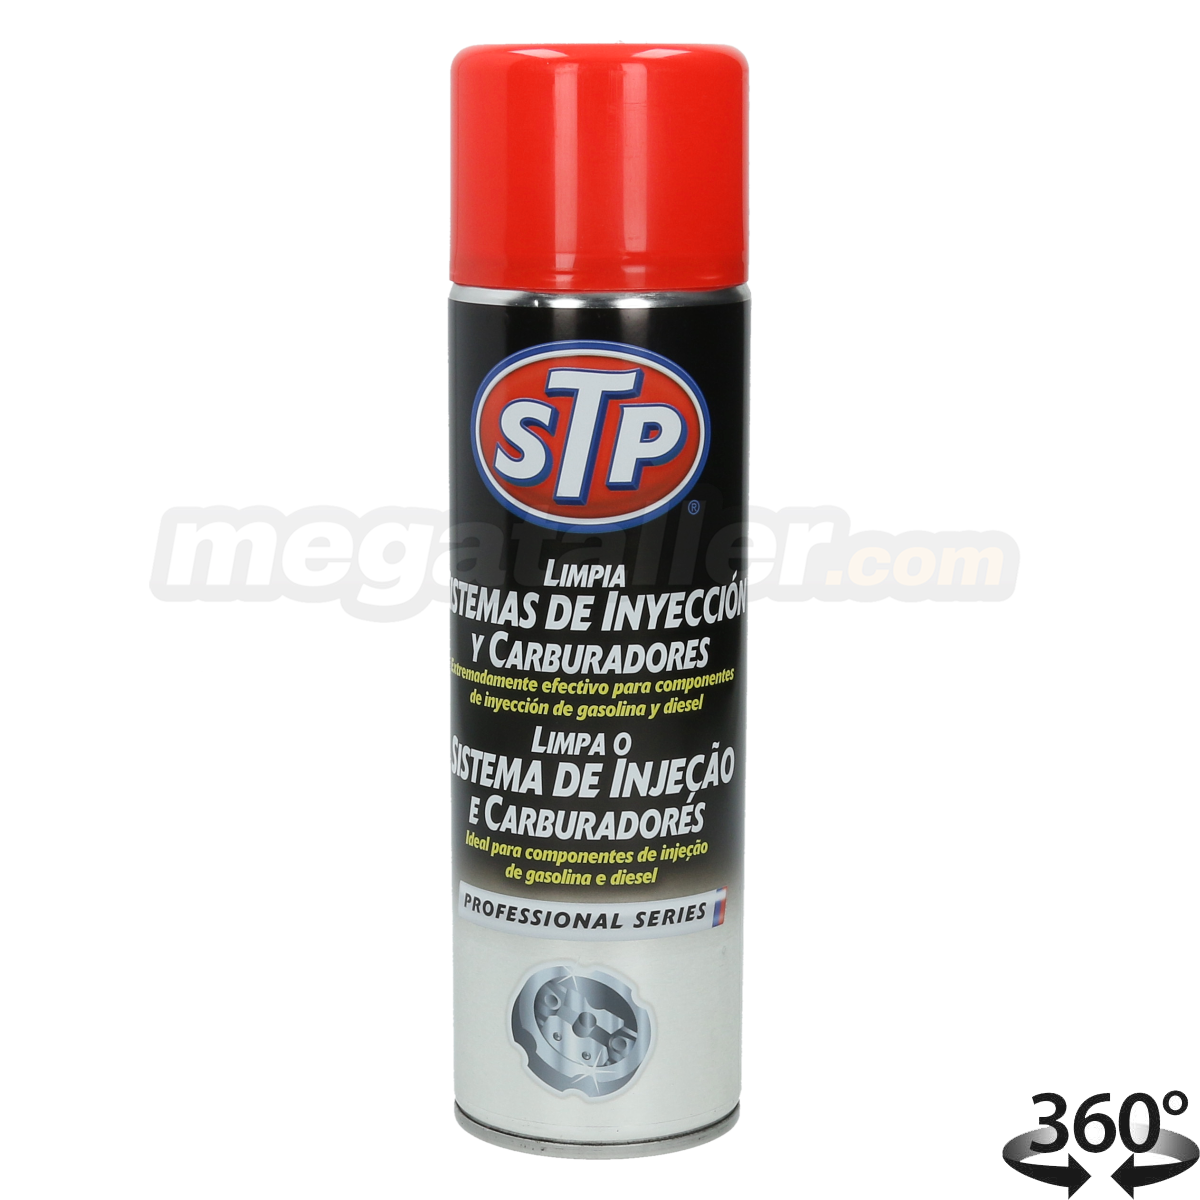 Limpia sistemas de inyección y carburadores STP 500ML